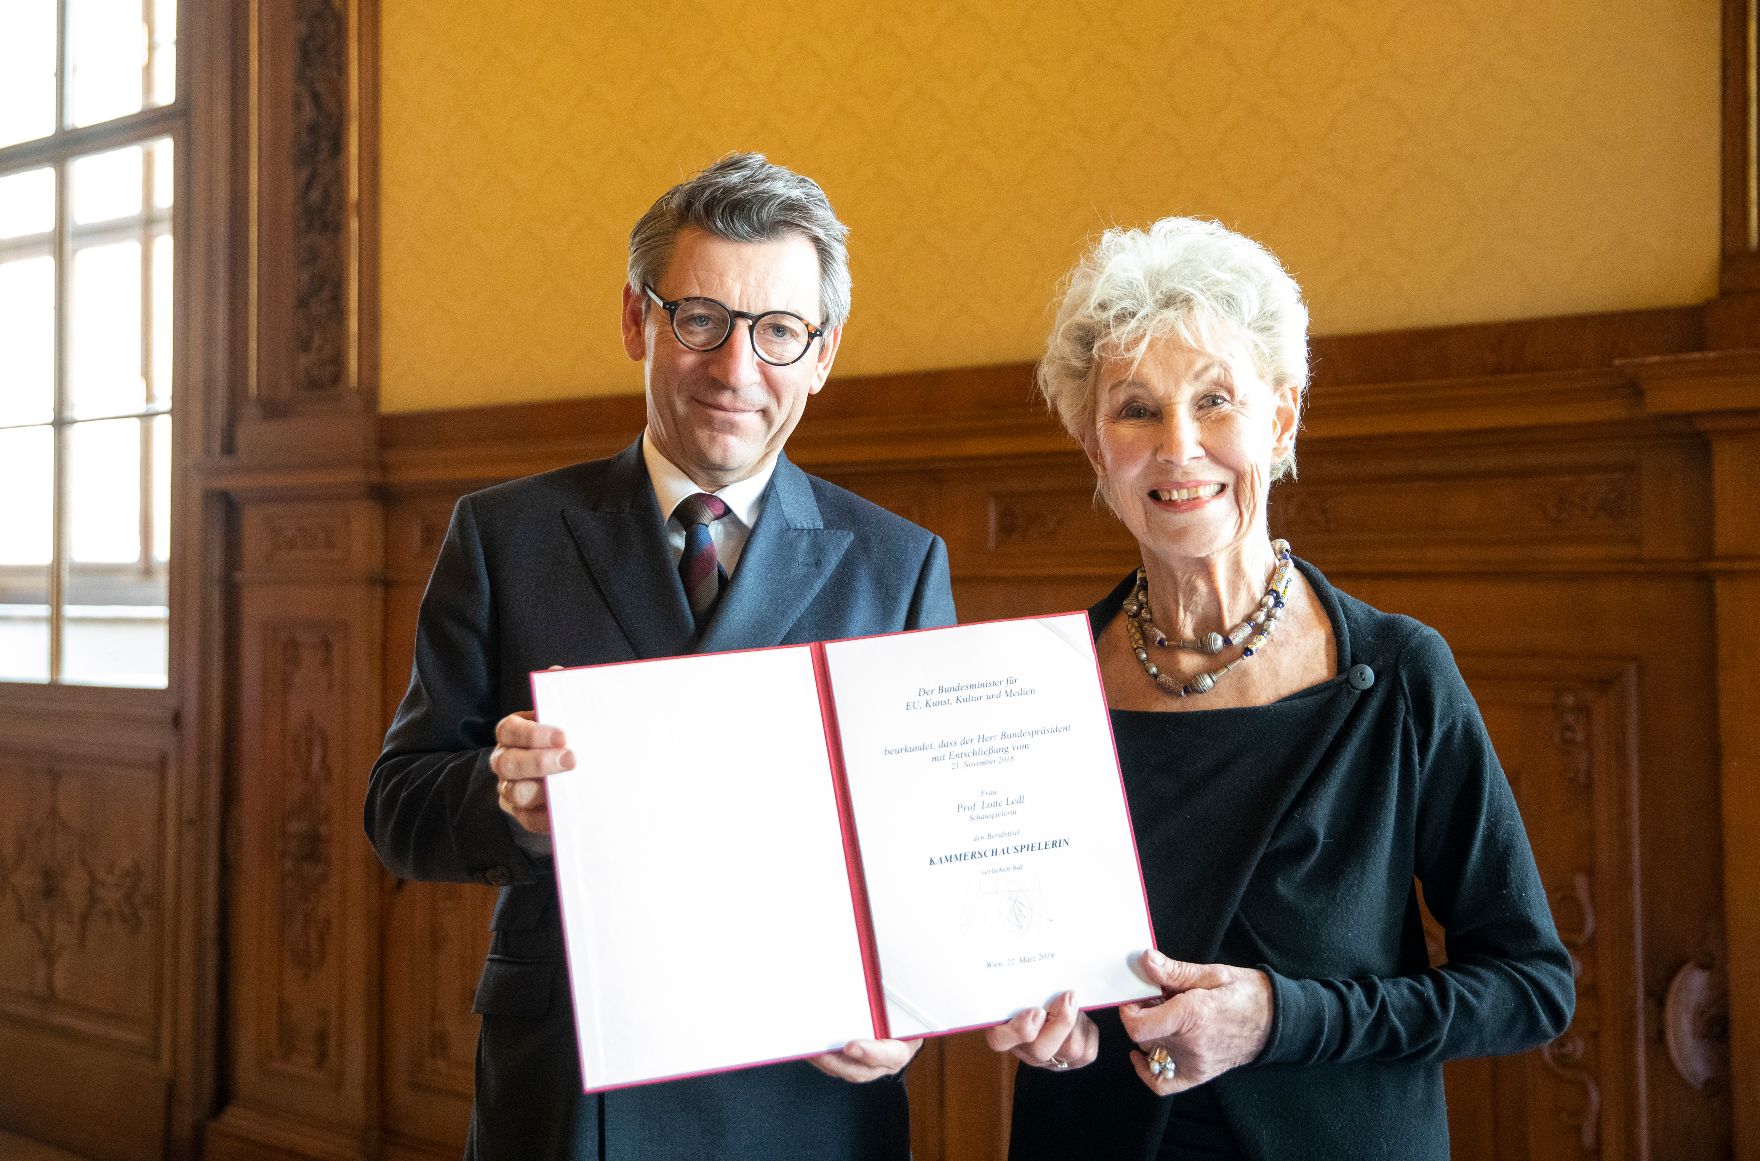 Am 22. März 2019 überreichte Sektionschef Jürgen Meindl (l.) die Urkunde, mit der Lotte Ledl (r.) der Berufstitel Kammerschauspielerin verliehen wurde.